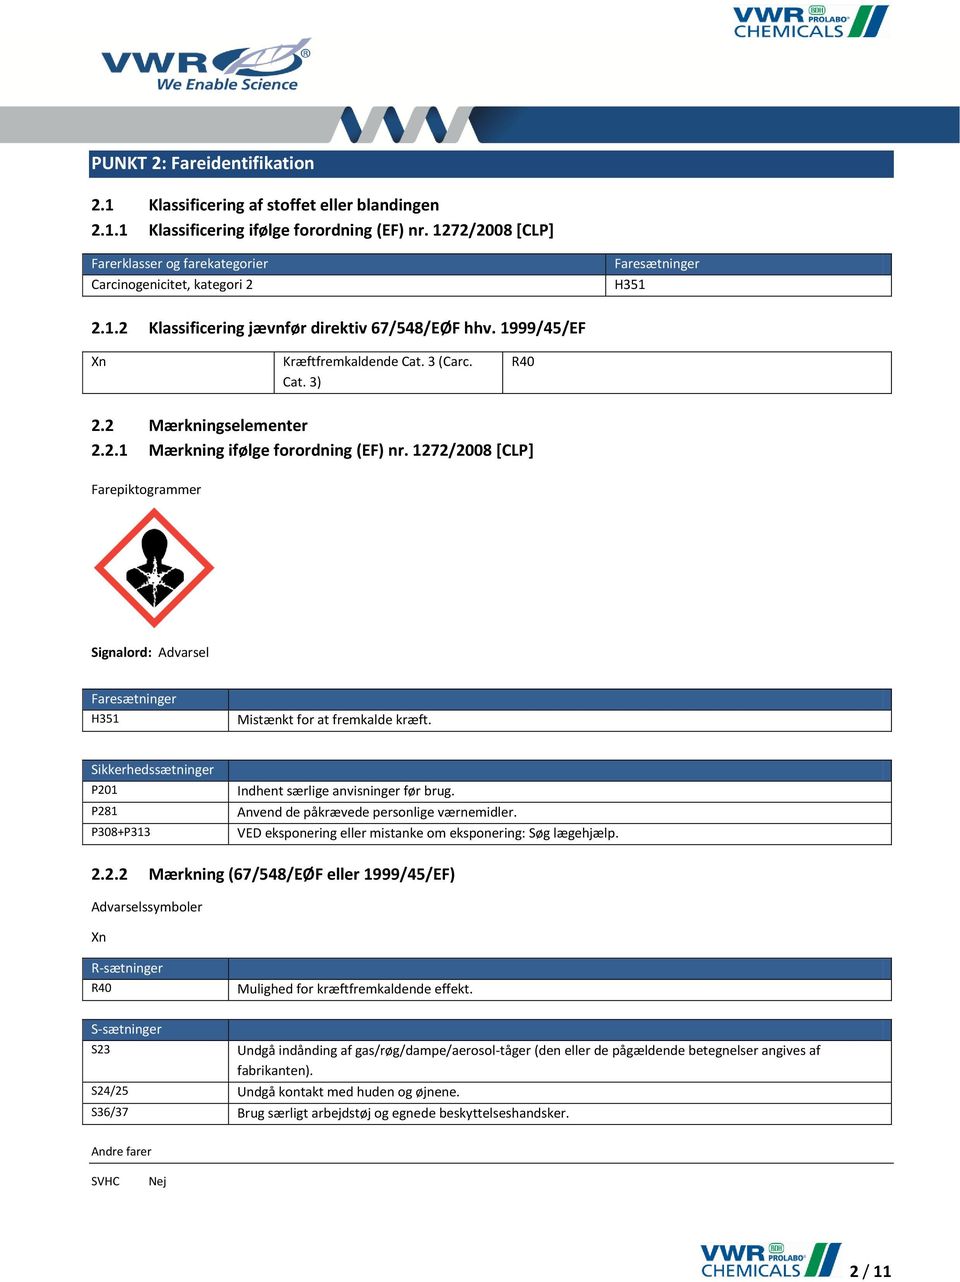 2 Mærkningselementer 2.2.1 Mærkning ifølge forordning (EF) nr. 1272/2008 [CLP] Farepiktogrammer Signalord: Advarsel Faresætninger H351 Mistænkt for at fremkalde kræft.